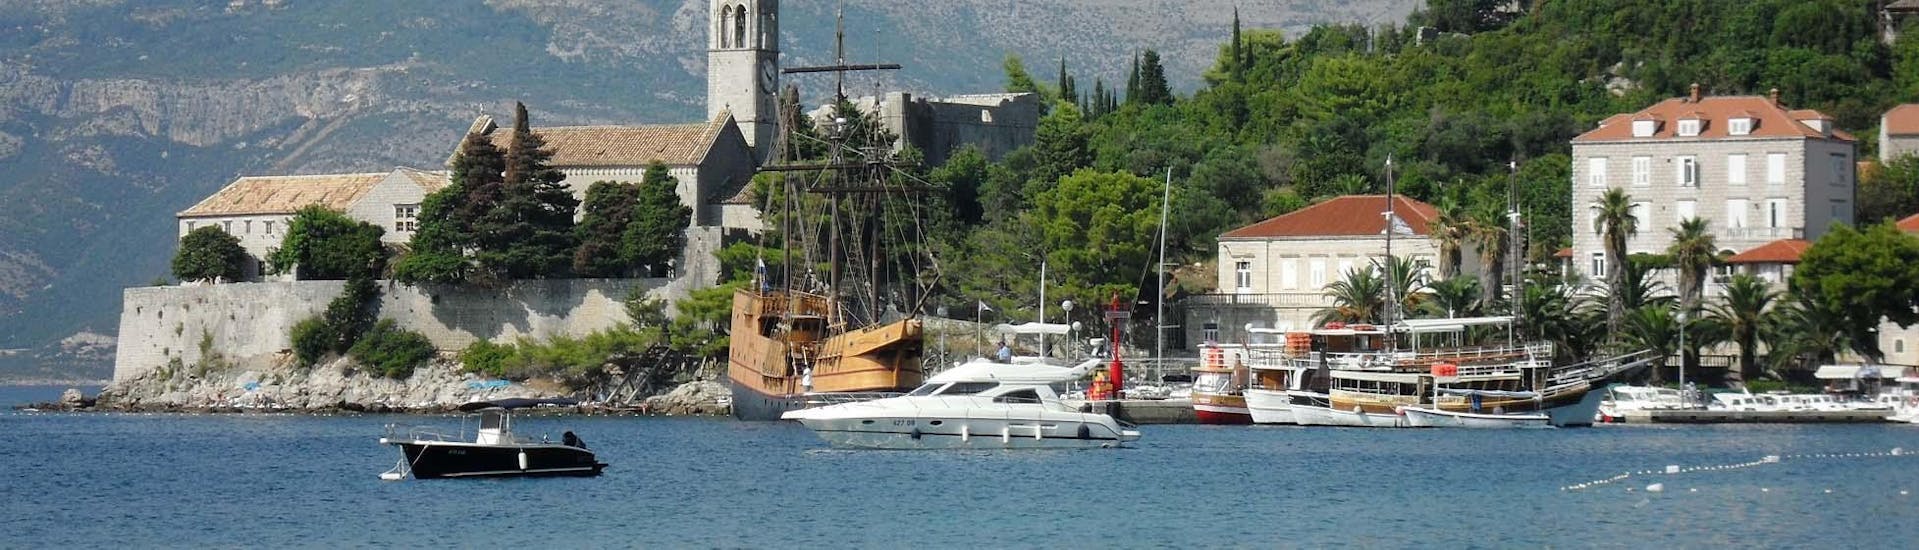 La barca di Dubrovnik Boat Tours in mare aperto durante la gita in barca alle isole Elafiti.